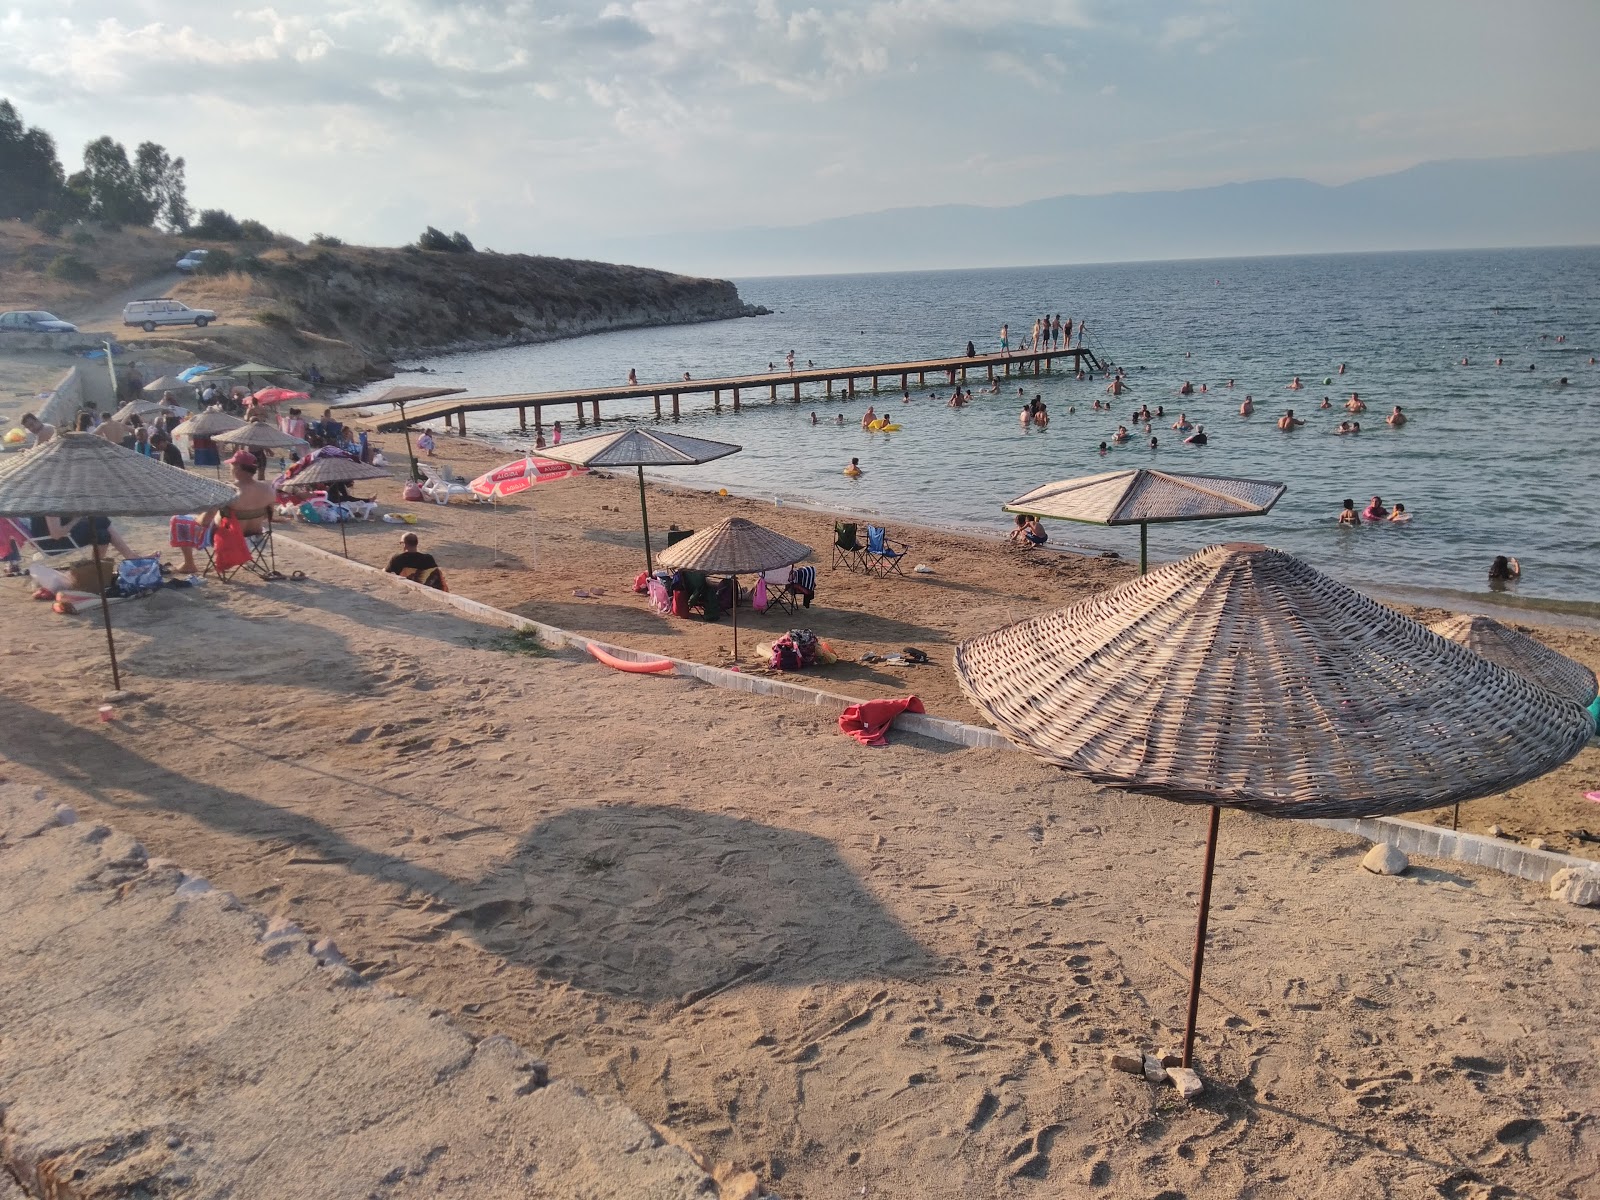 Zdjęcie Sirataslar beach - popularne miejsce wśród znawców relaksu